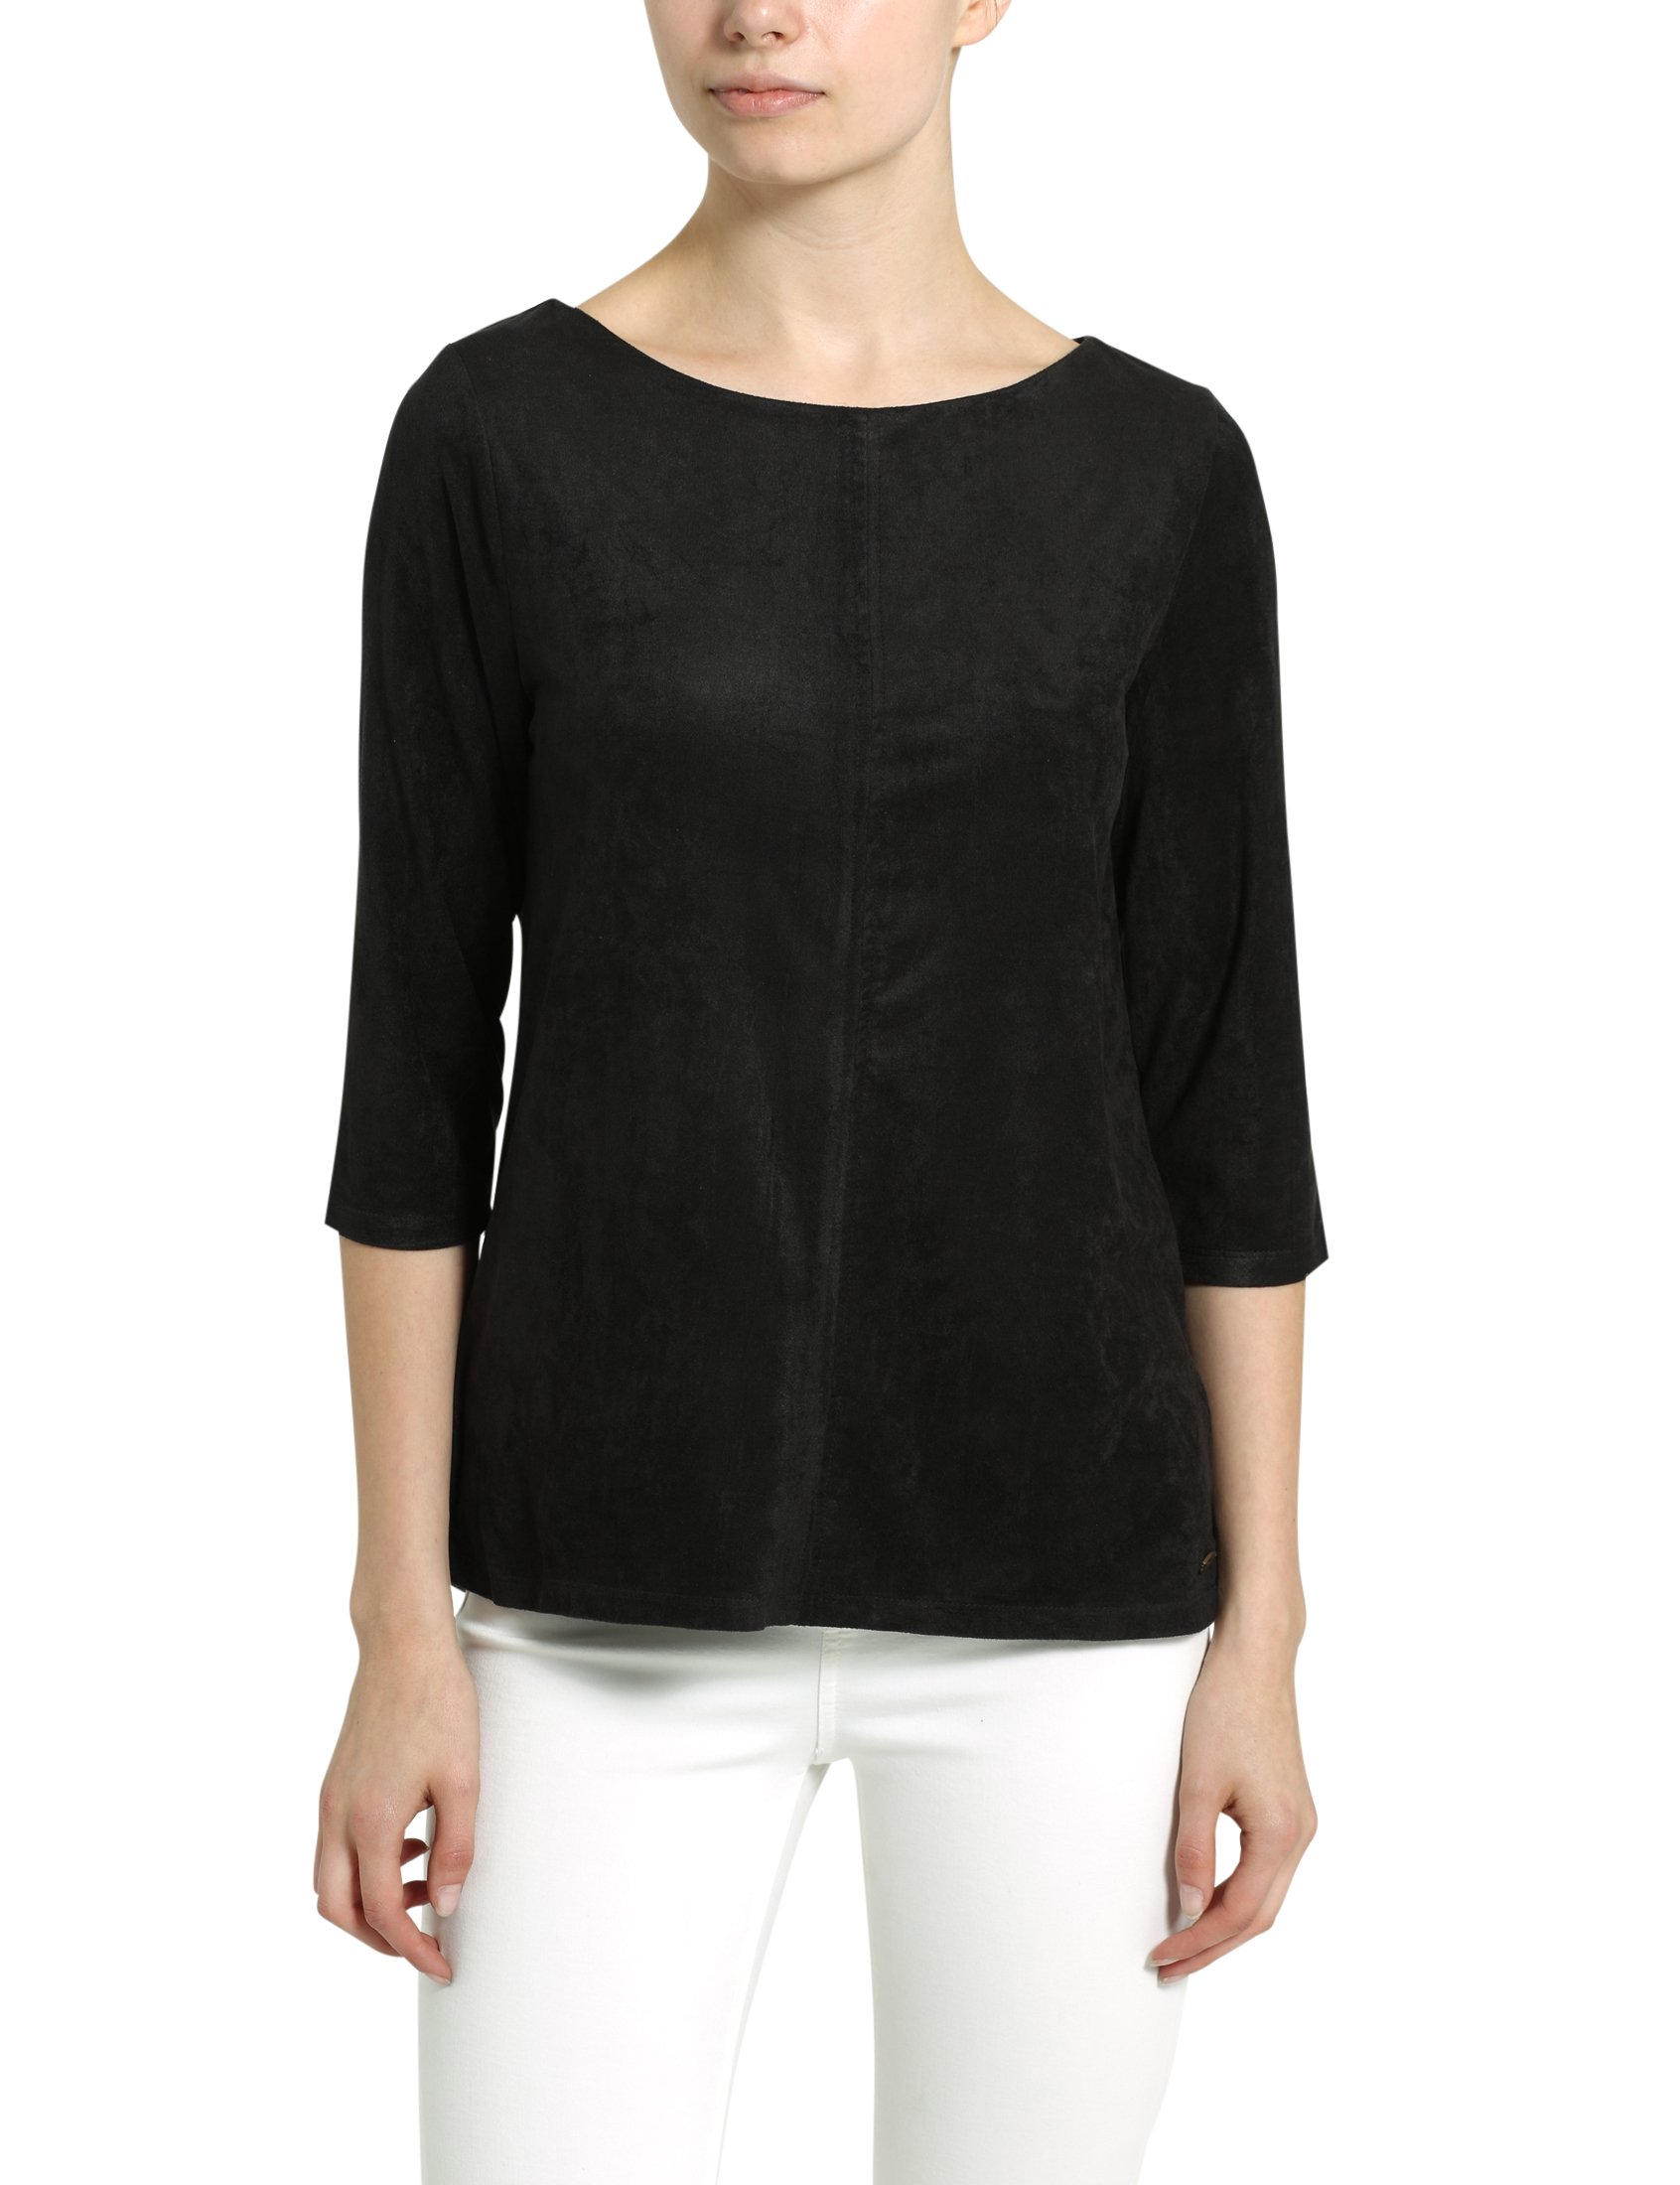 berydale Shirt mit Dreiviertelärmeln, Damen, Schwarz, XL